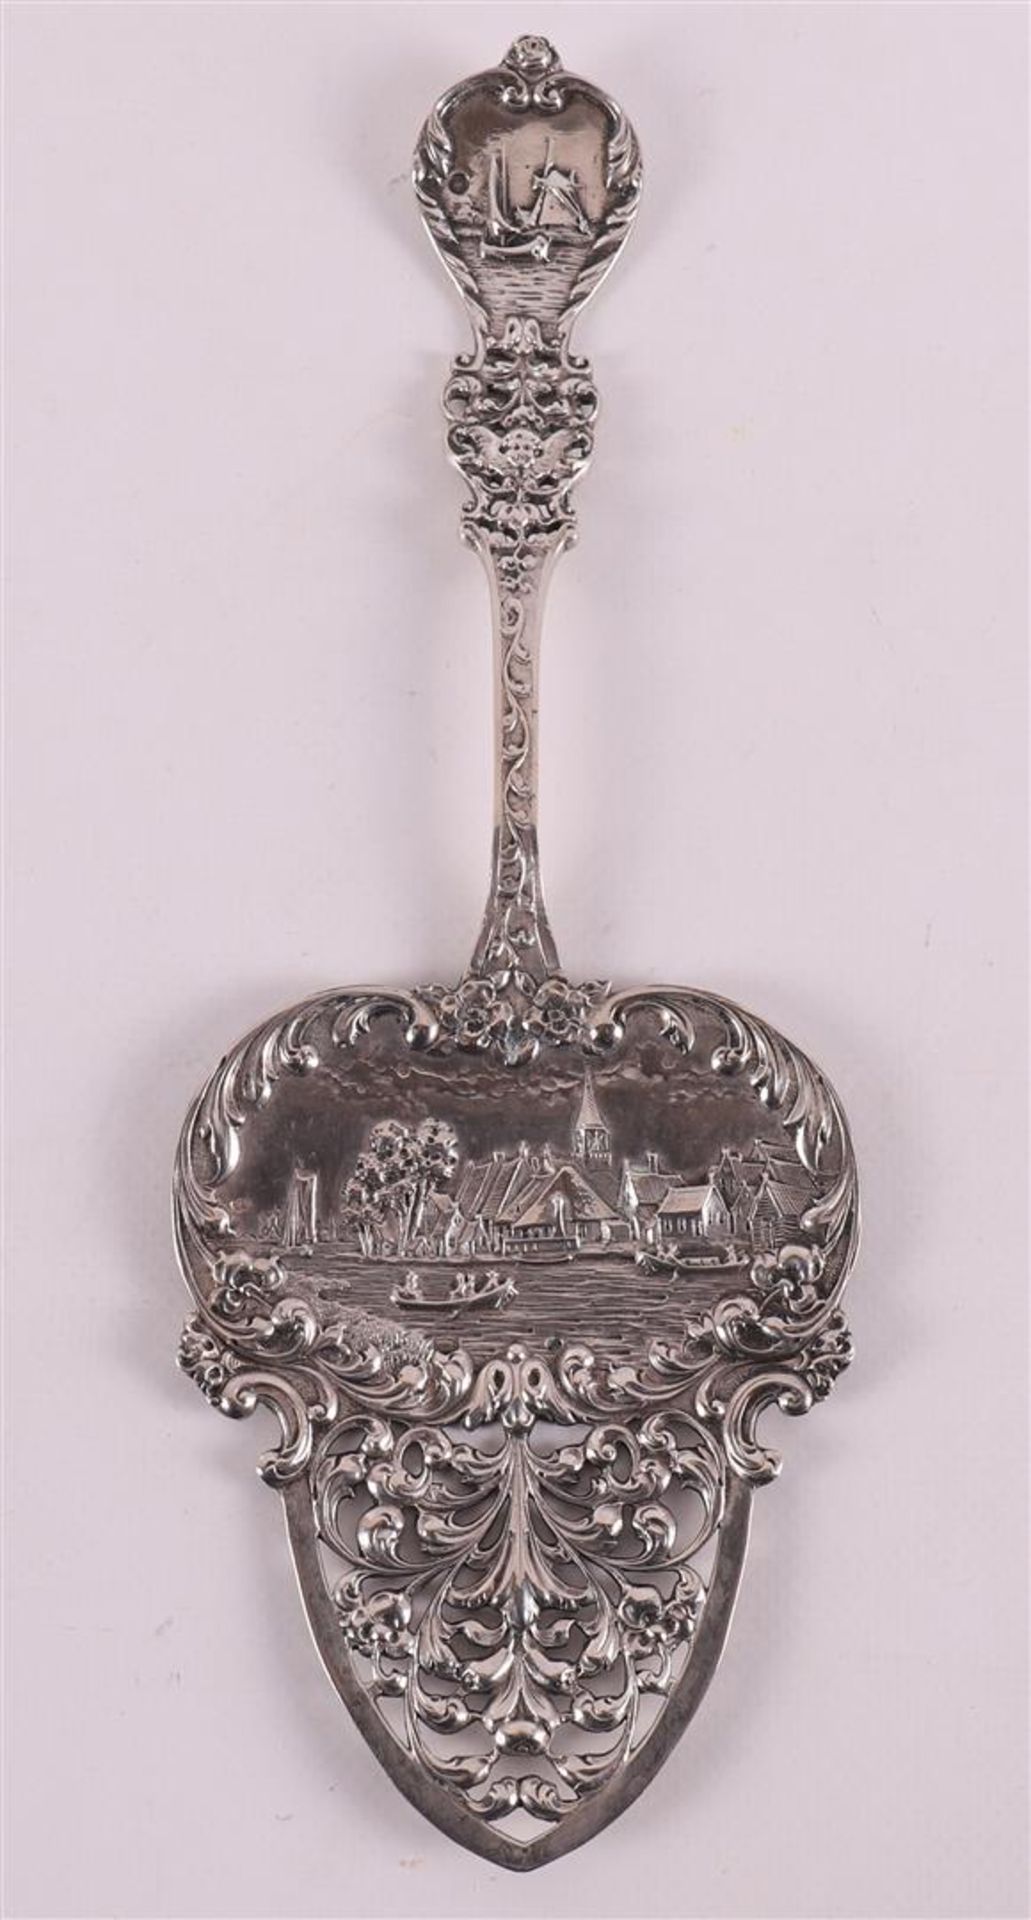 A second grade 835/1000 silver decorative spoon with a Dutch scene.